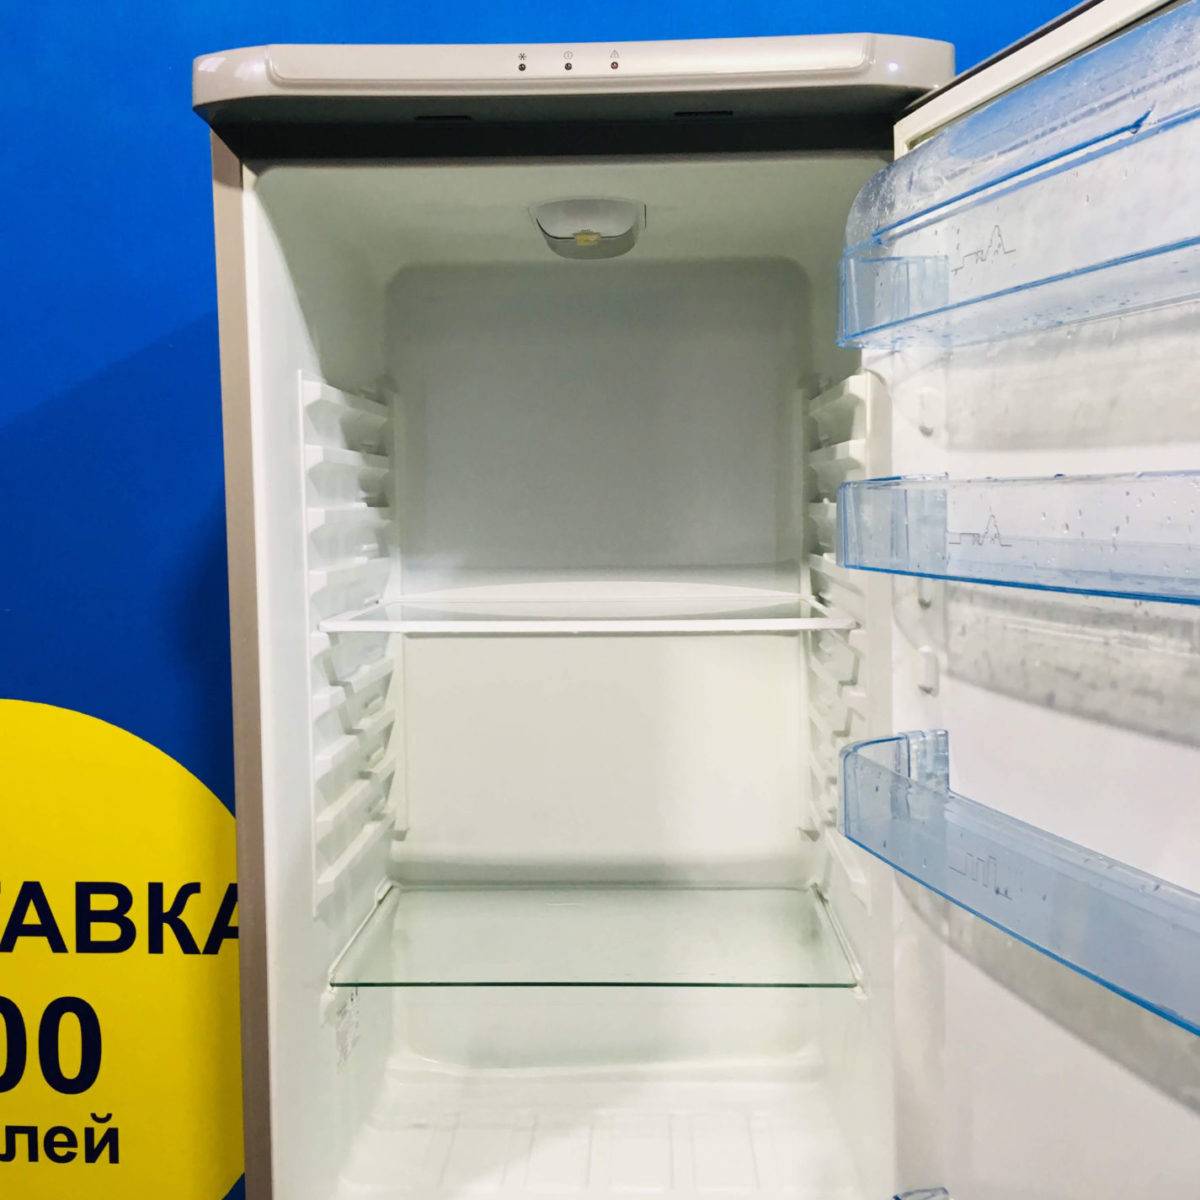 Холодильники electrolux: топ-7 лучших моделей, отзывы, советы по выбору